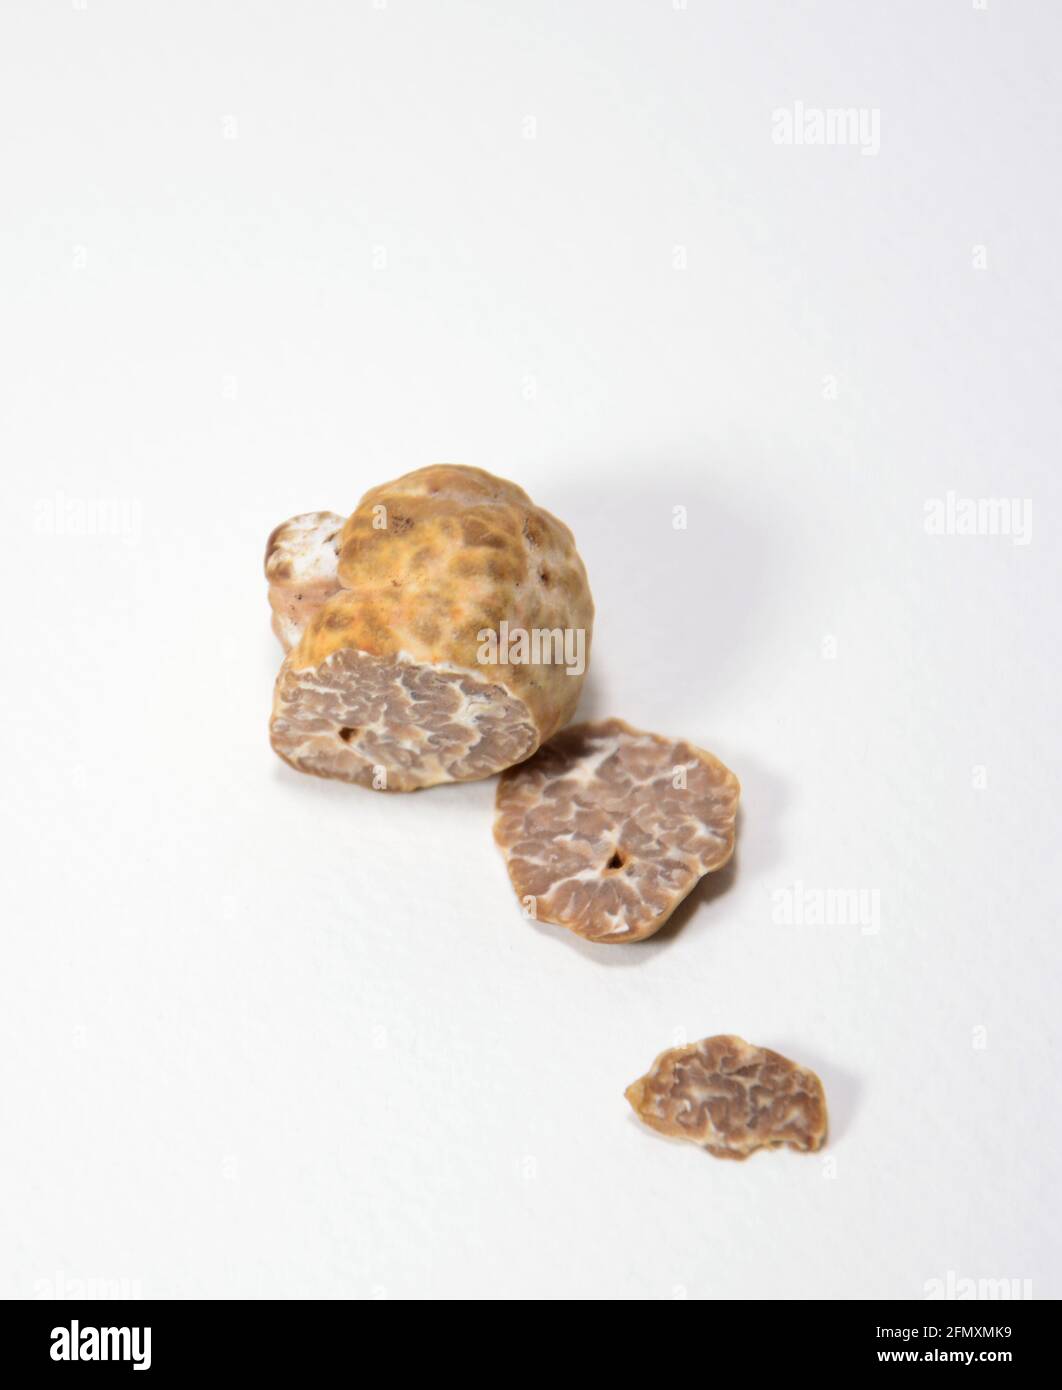 white truffle isolated on black / white background Stock Photo